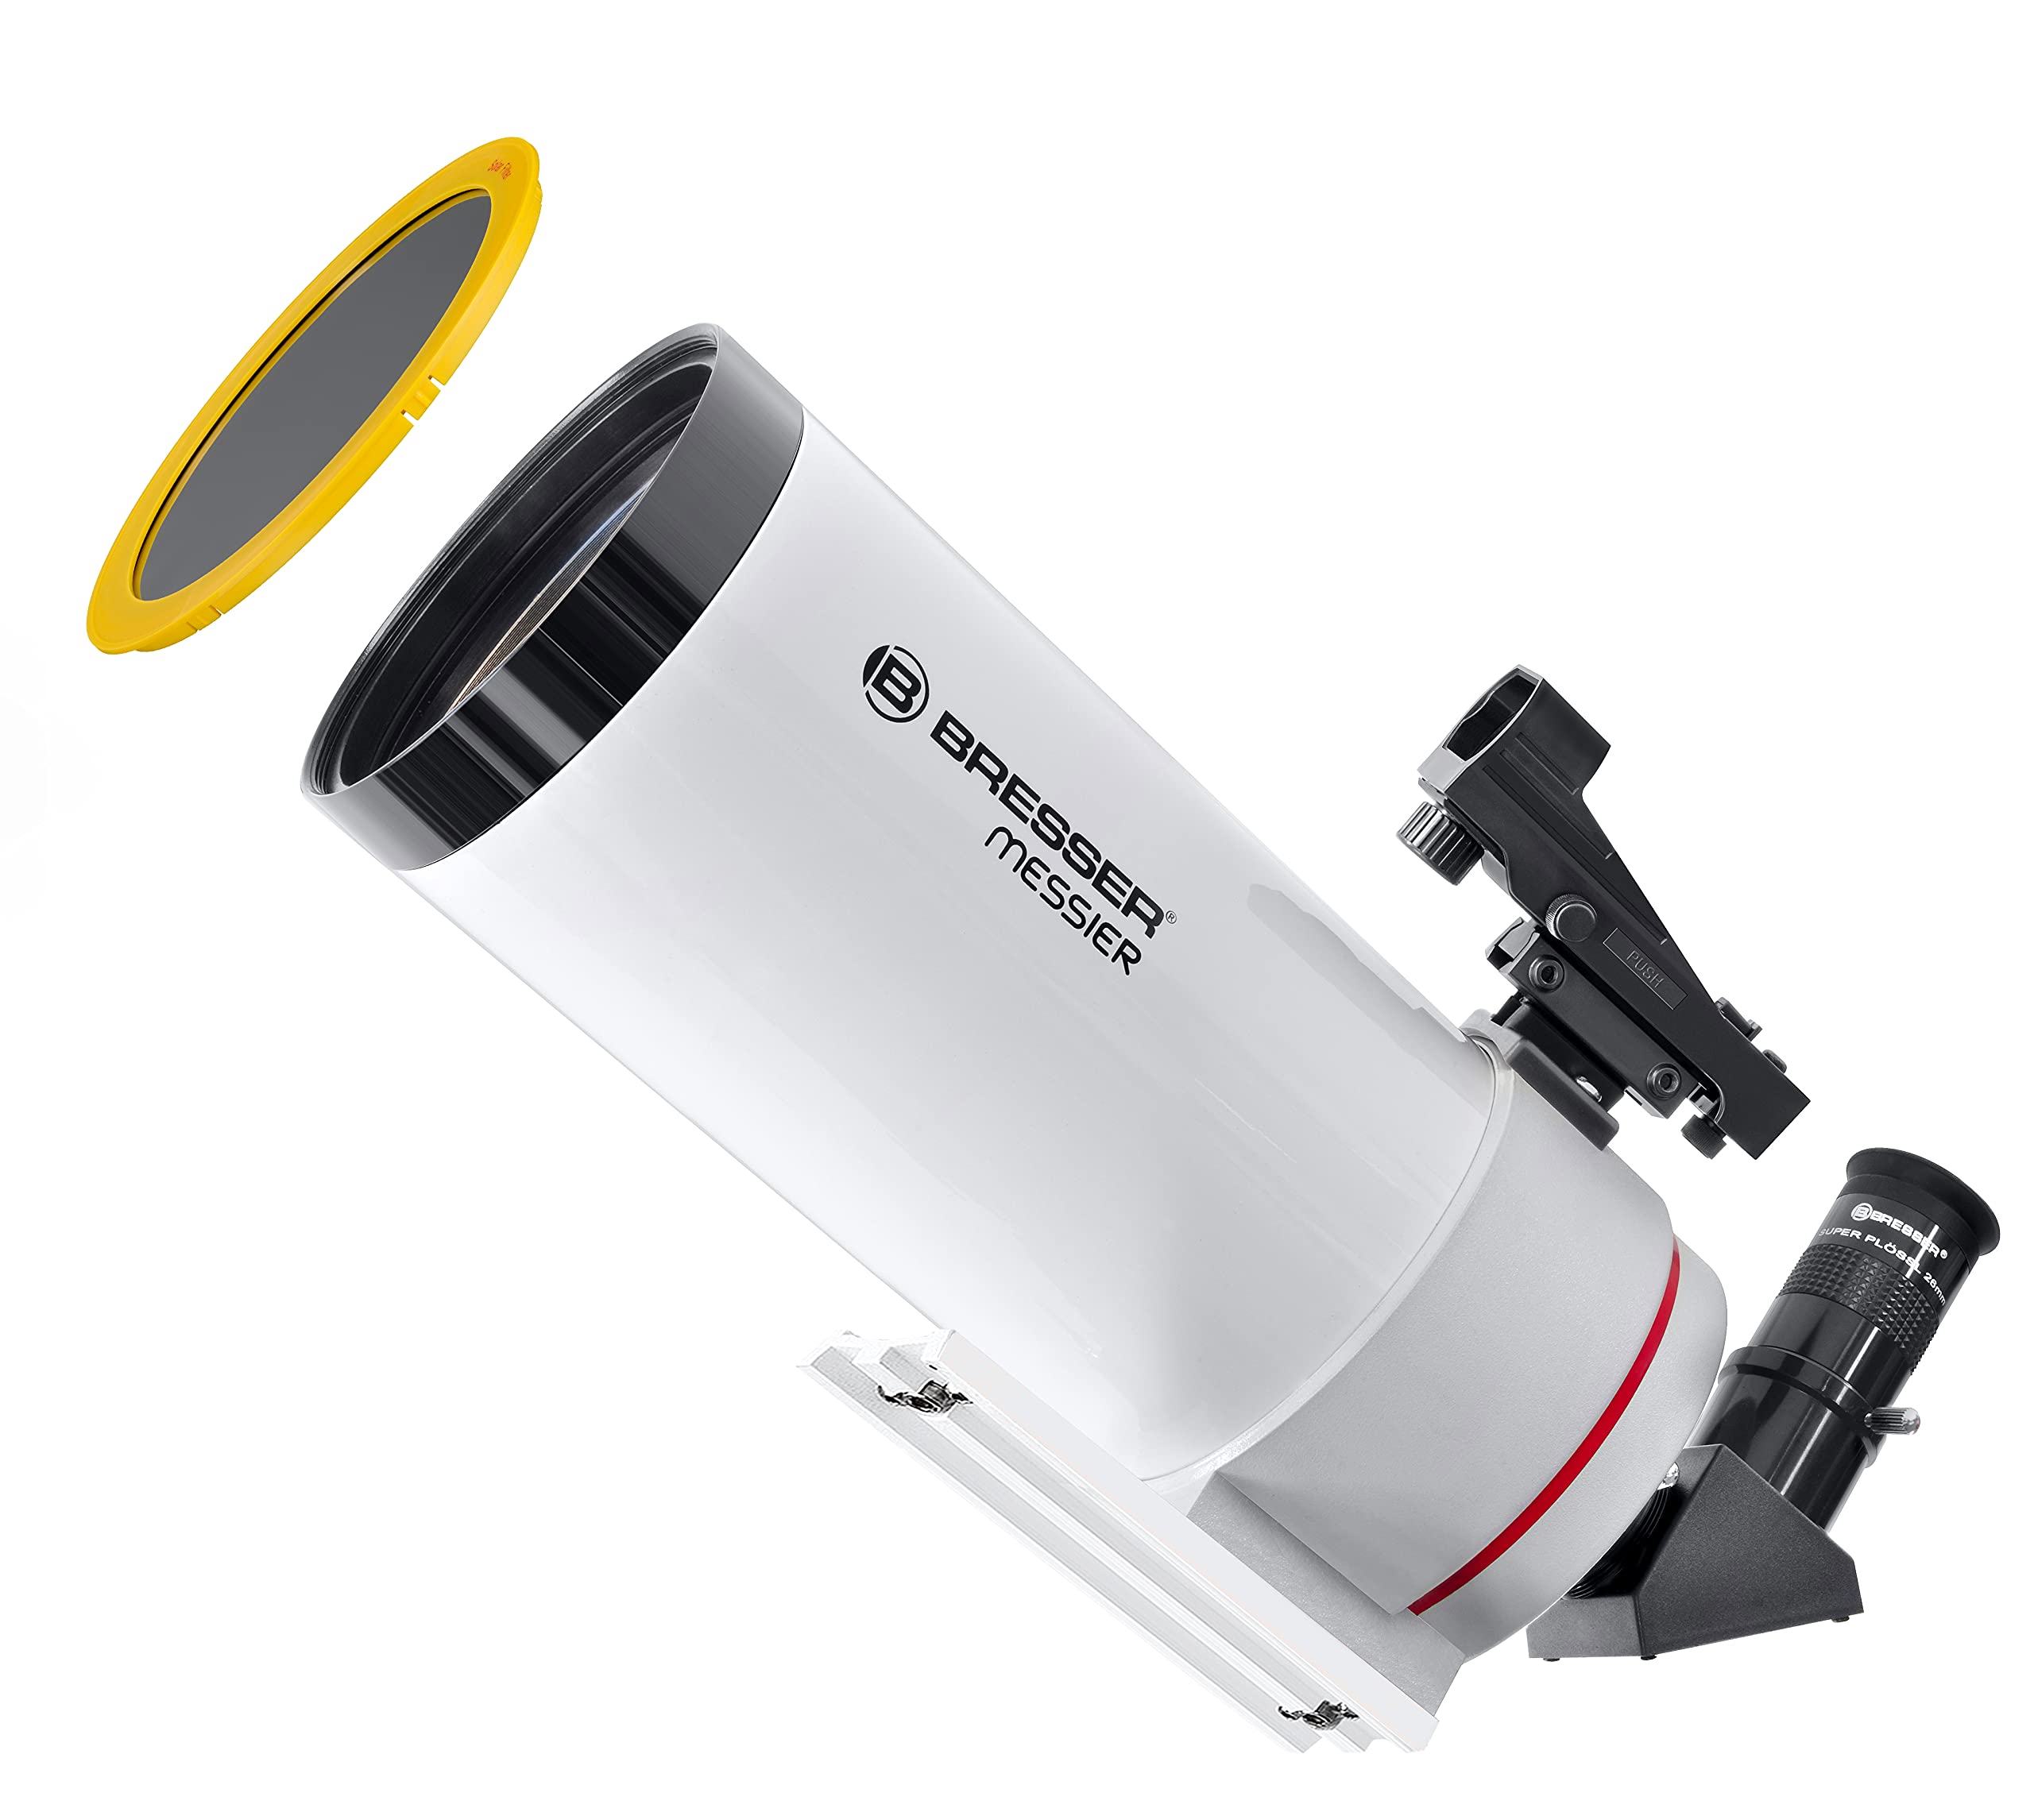 Bresser Teleskop Messier MC-100/1400 optischer Tubus mit SPL-Okular, LED-Sucherfernrohr, universeller Edelstahl-Klemmfläche für Montierungen und Astronomie-Software Stellarium, weiß